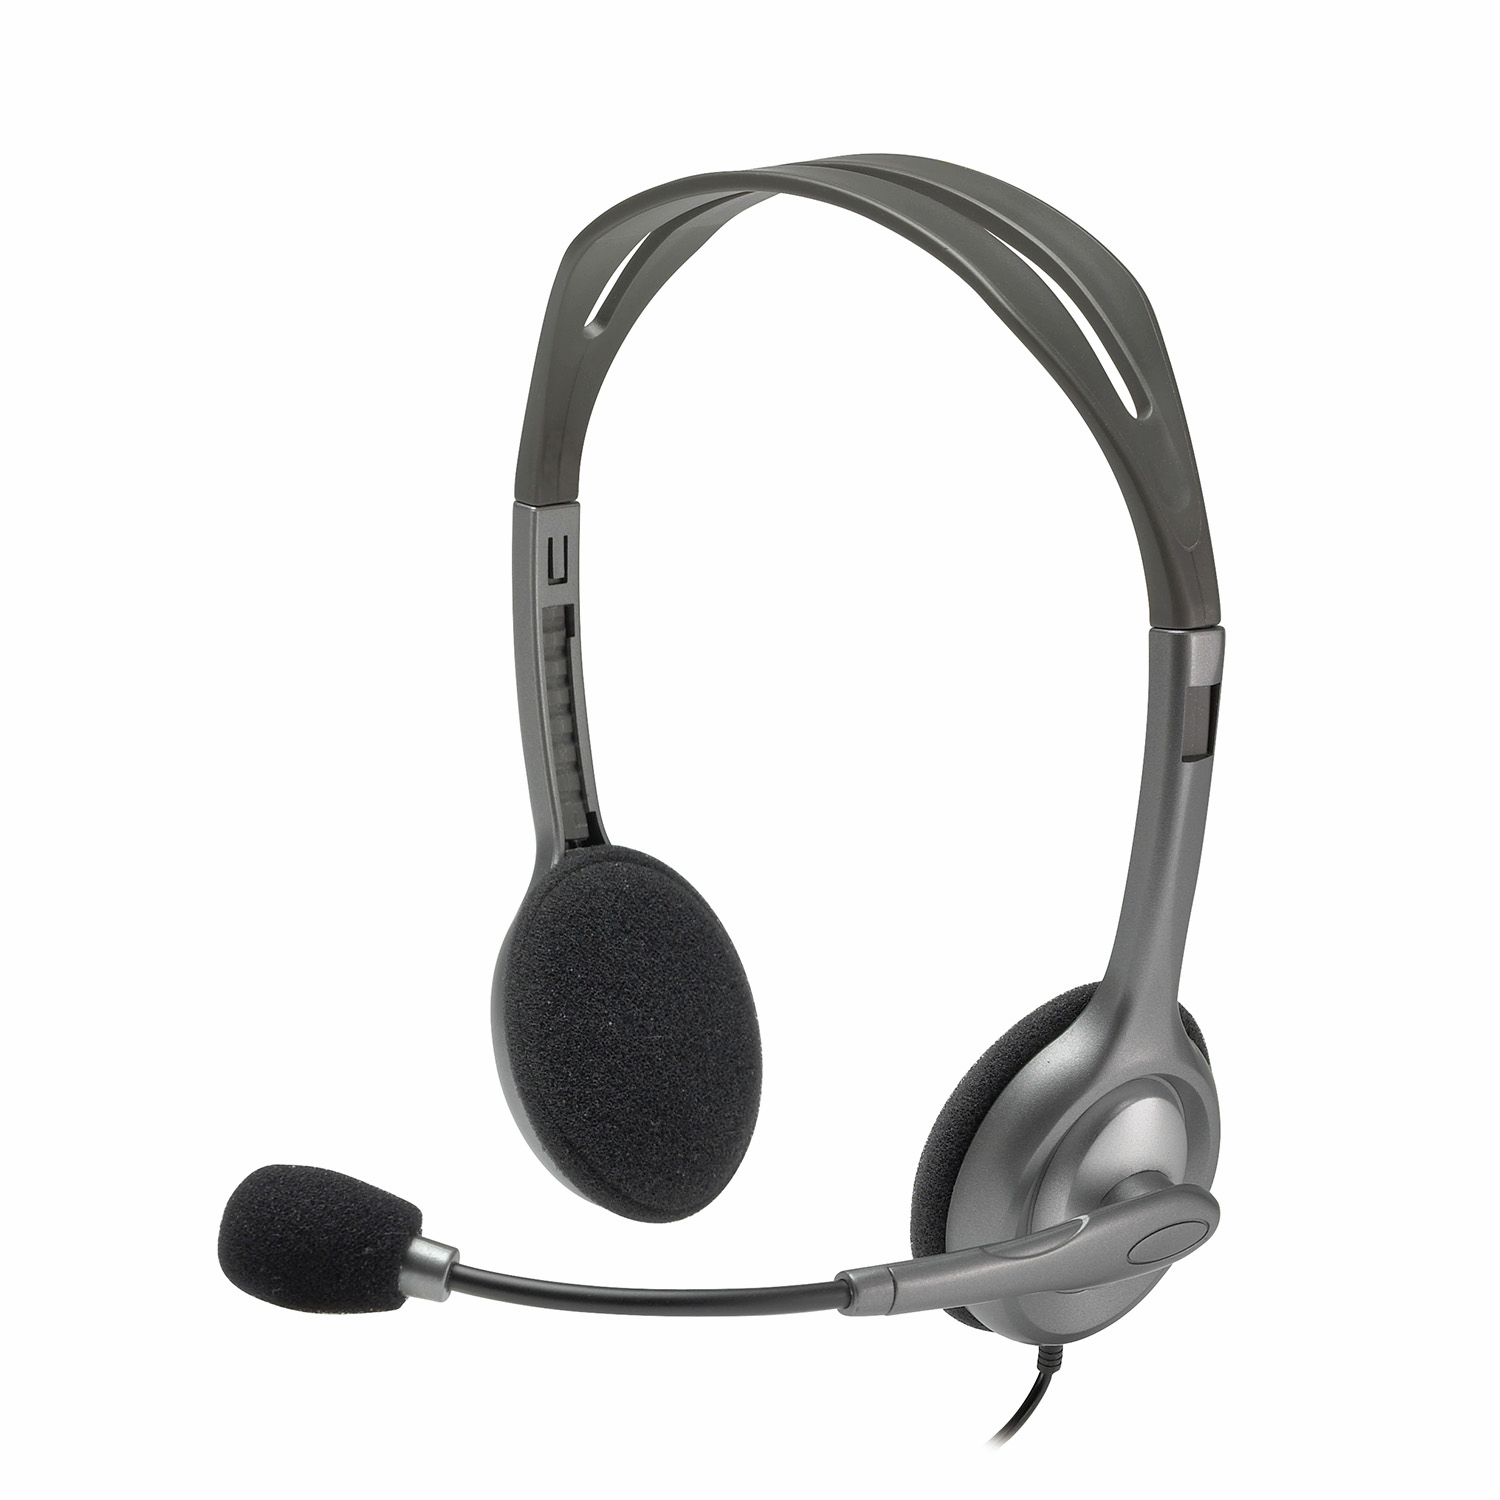 Проводная гарнитура Logitech H110 Stereo Headset, серый/черный